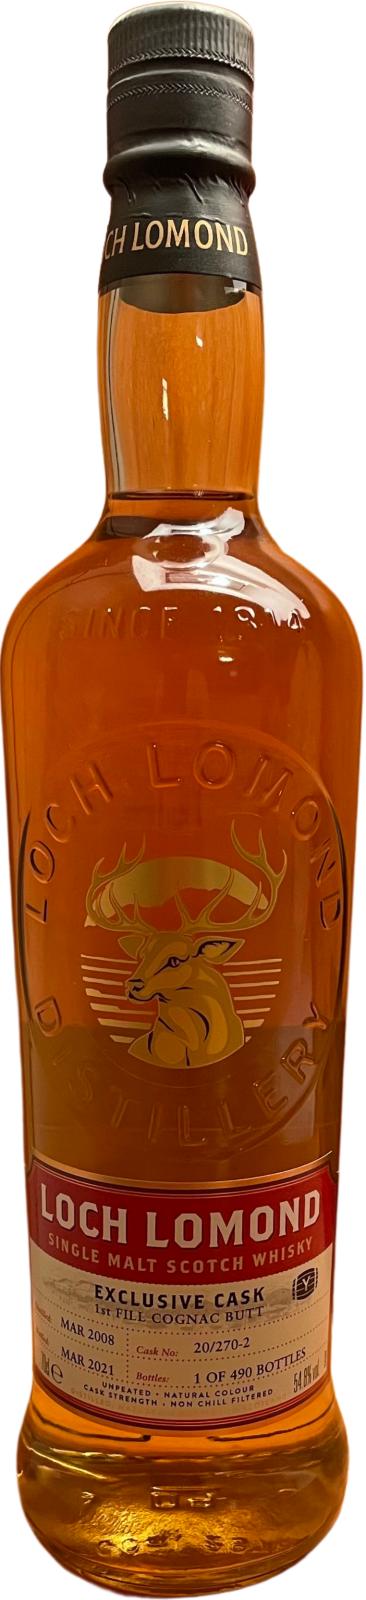 Loch Lomond 2008 Exclusive Cask 1st Fill Cognac Butt 20 270-2yo 's Cask Tokyo 54.8% 700ml